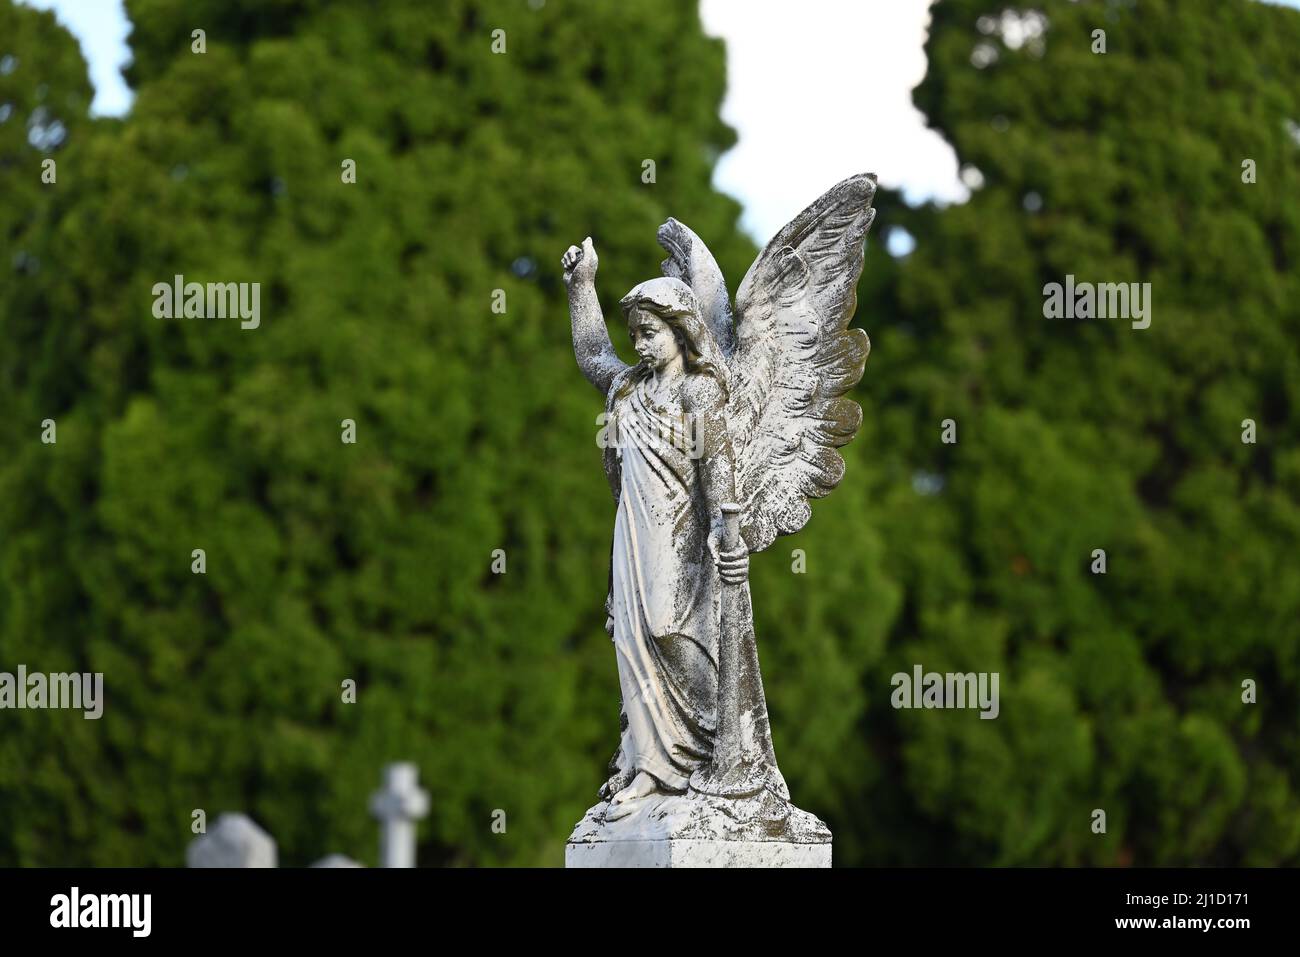 Sculpture en pierre blanche et patientée d'un ange ailé dans un cimetière, tenant une corne dans sa main gauche, avec des arbres en arrière-plan Banque D'Images